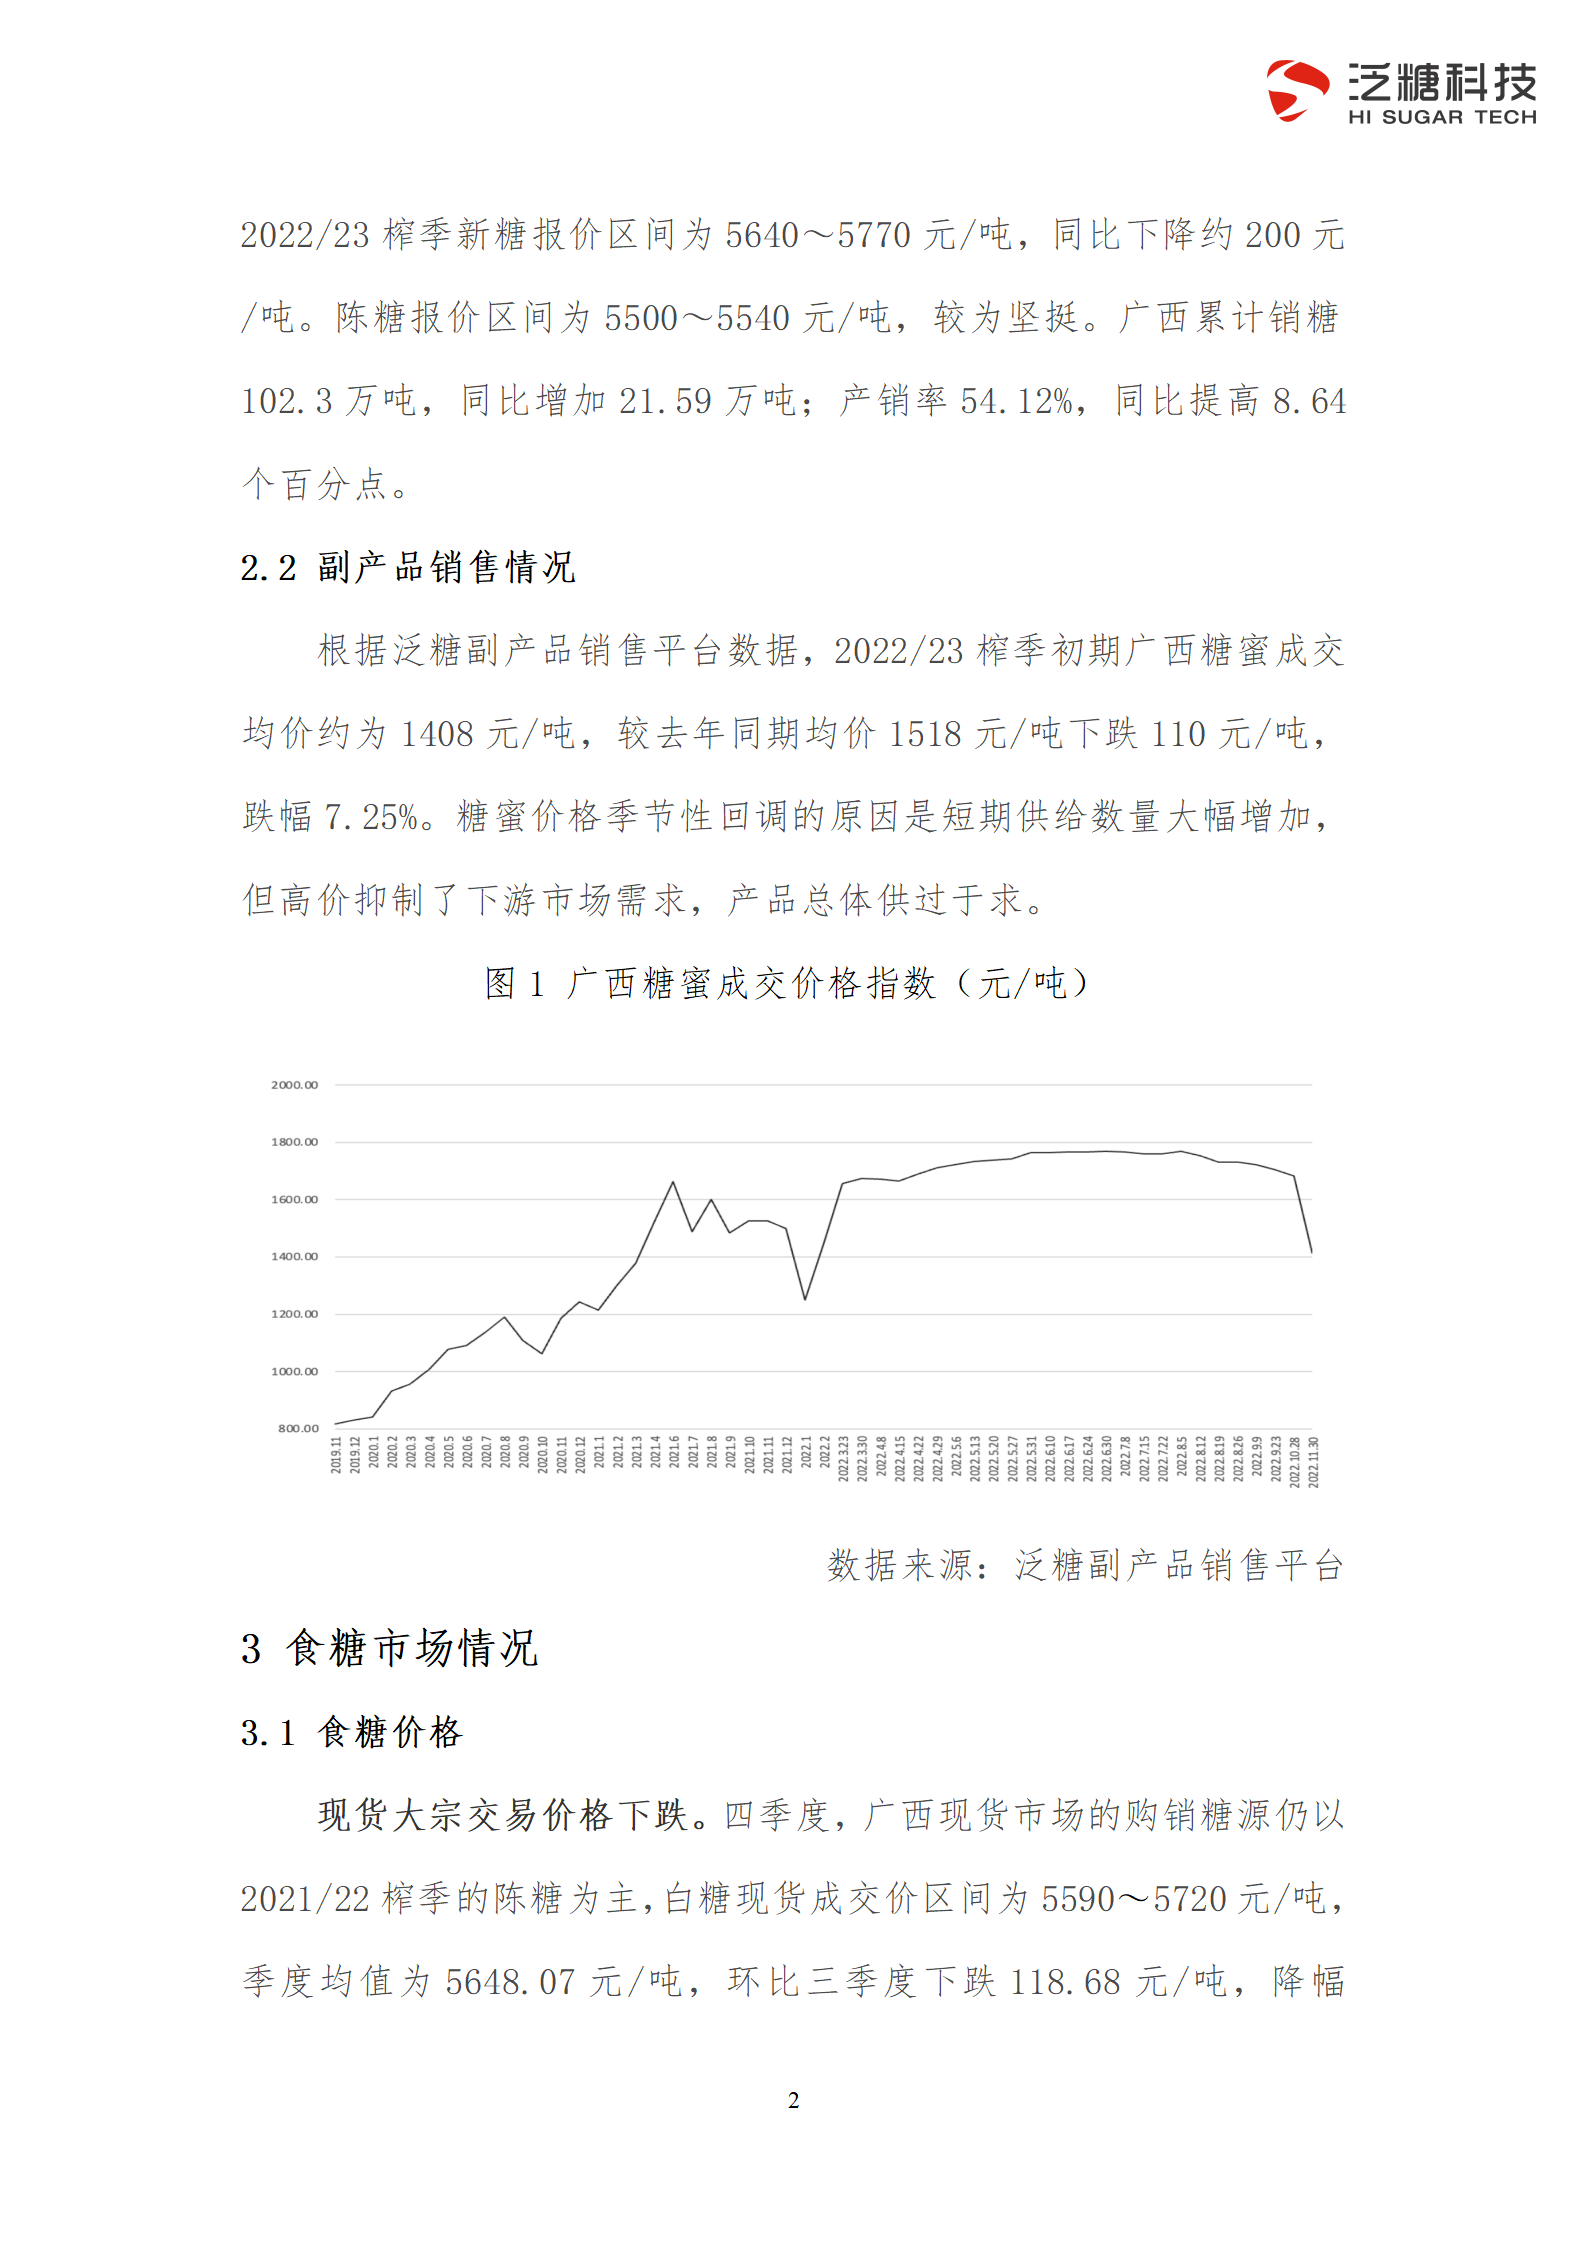 简化版-广西食糖产业运行分析报告（2022年第四季度）_05.png